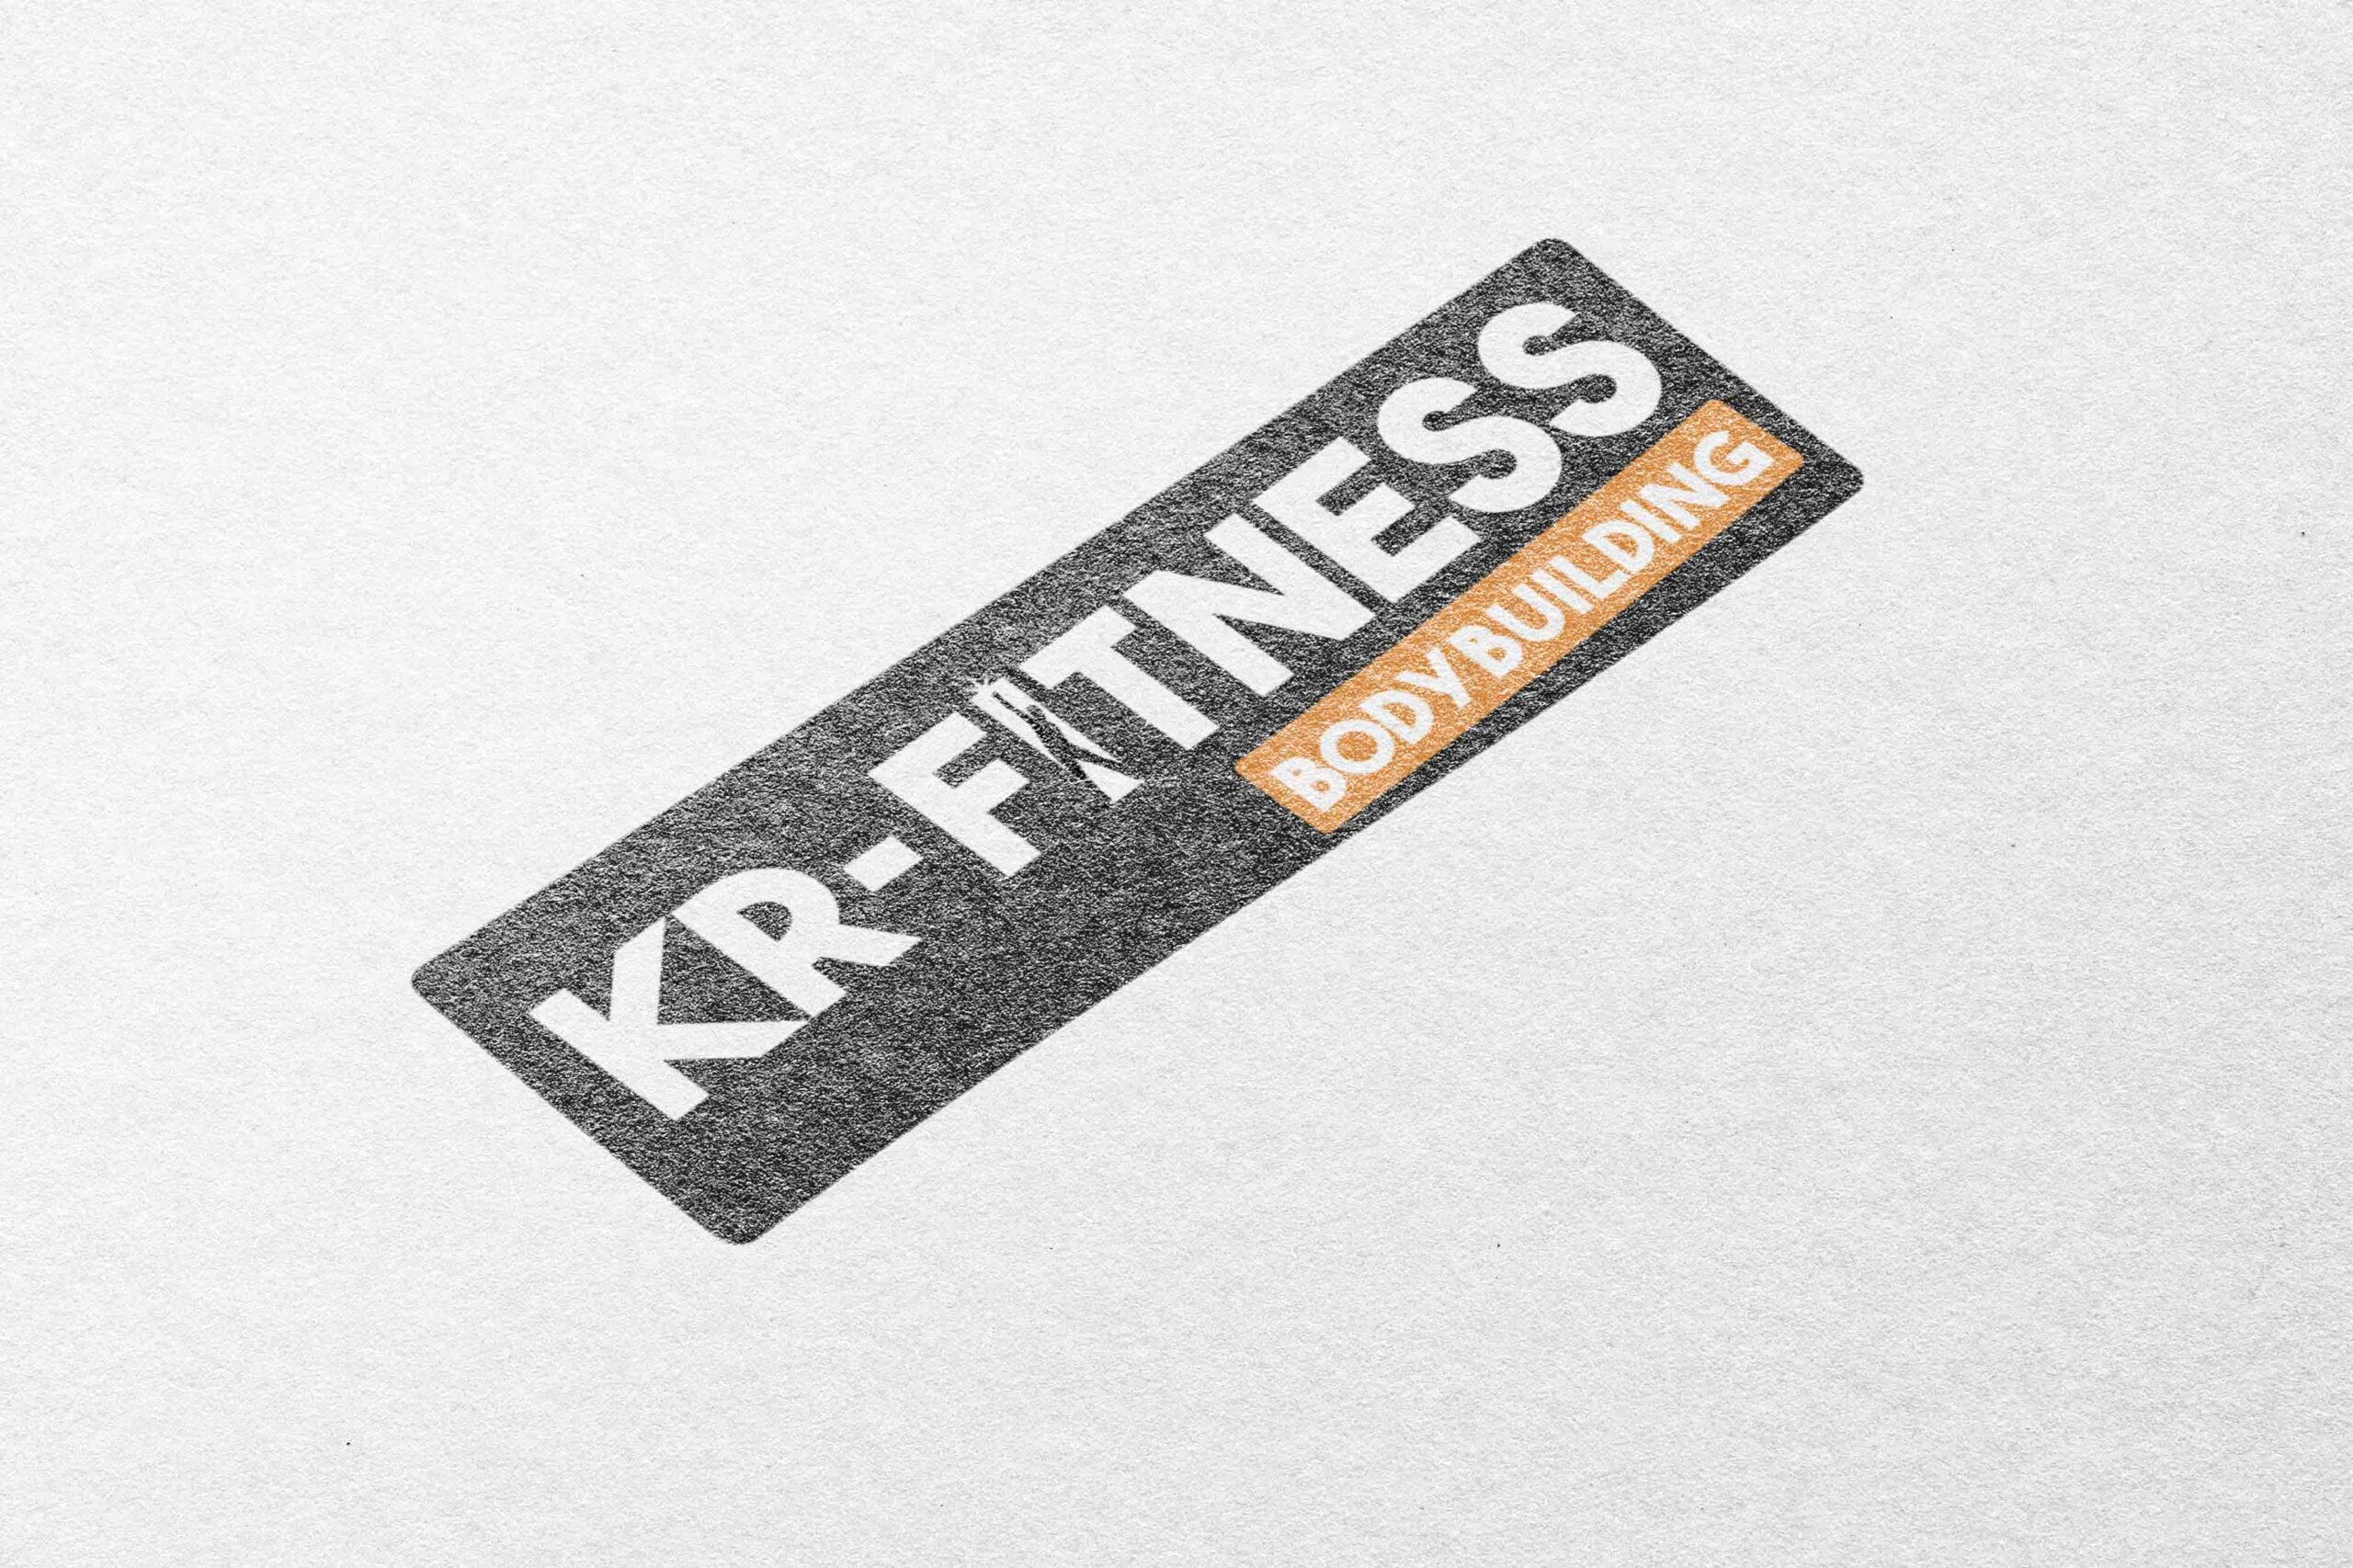 Kr fitness model 4